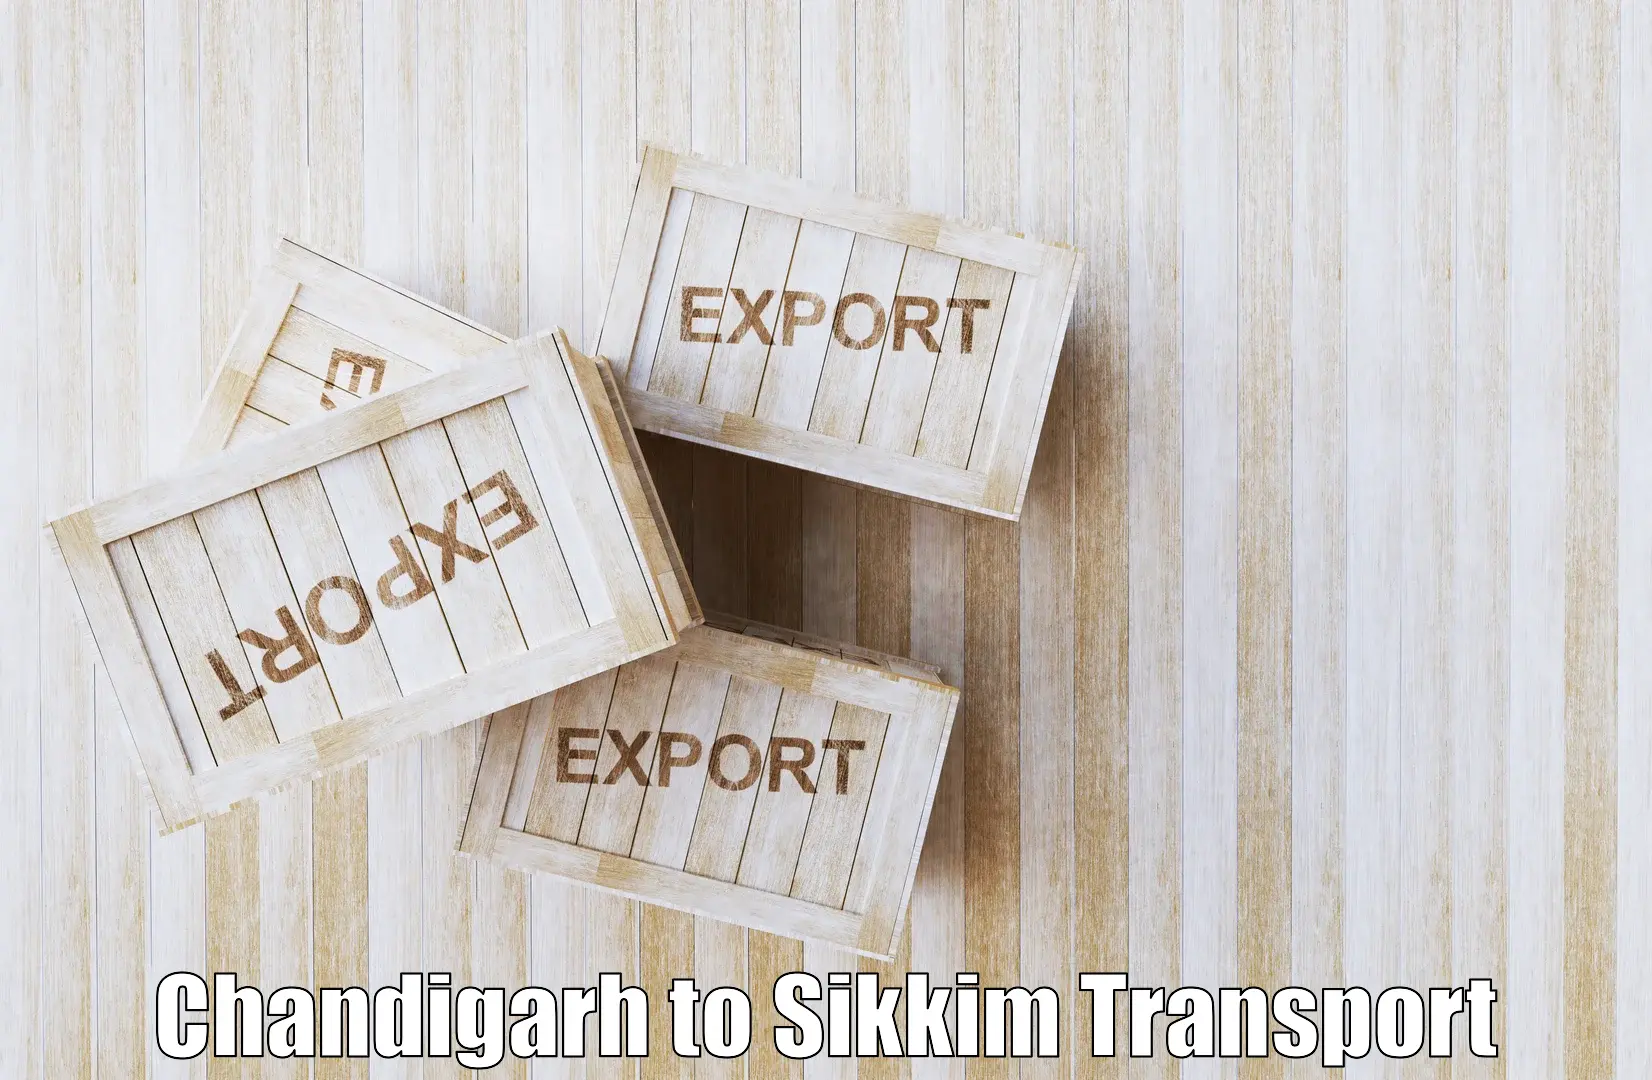 Nearest transport service Chandigarh to West Sikkim